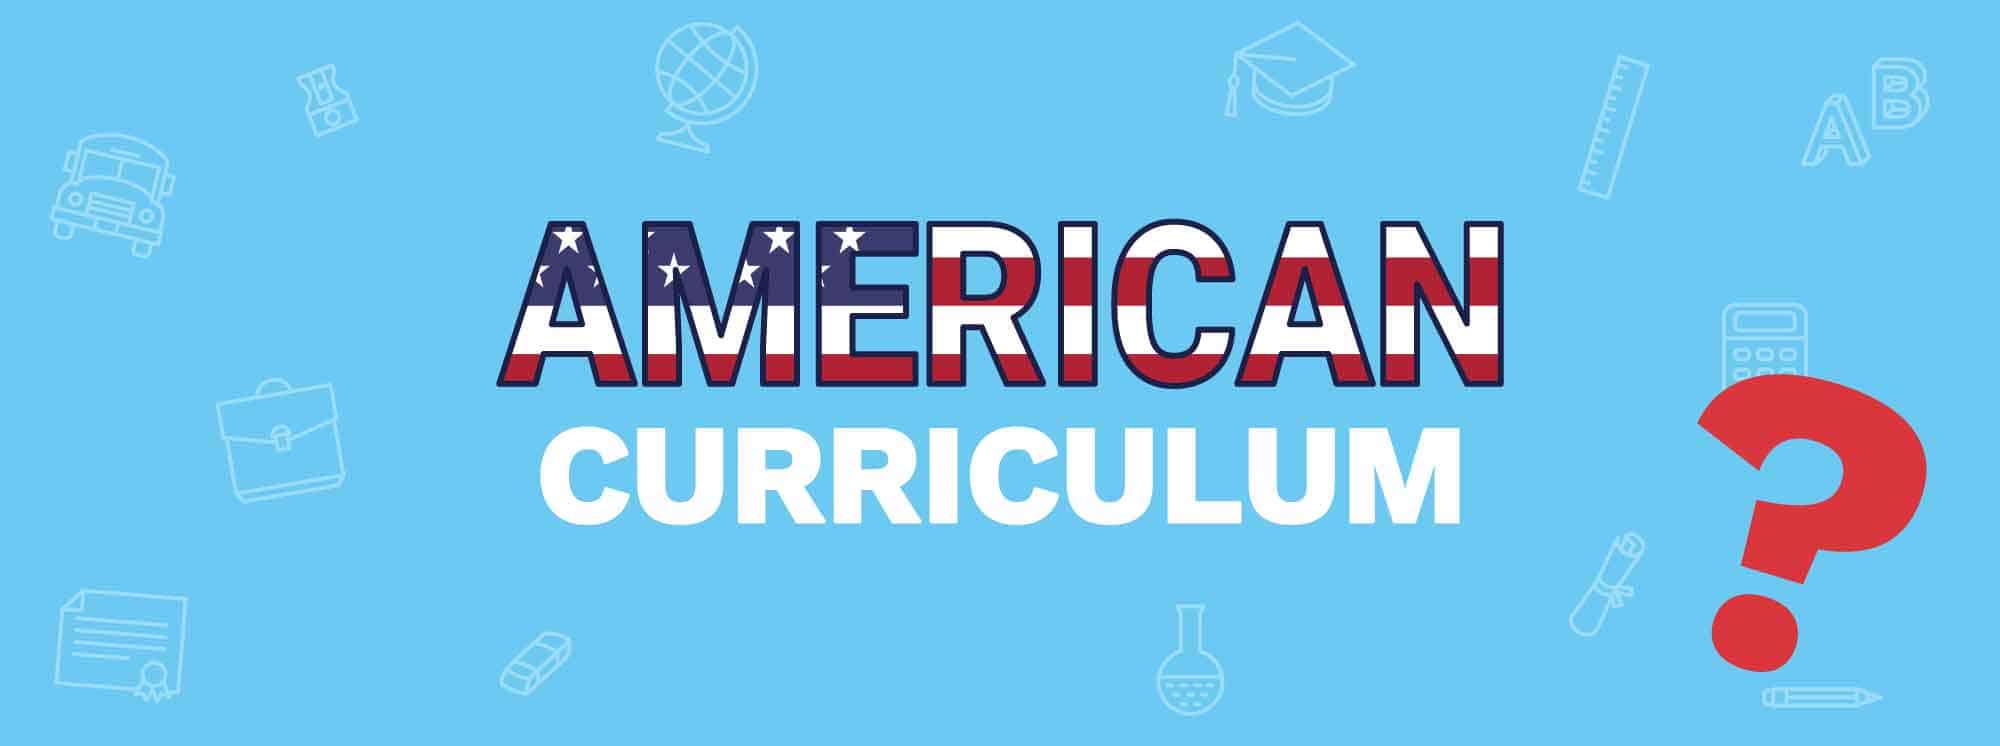 Curriculum americano: Tudo o que você precisa saber